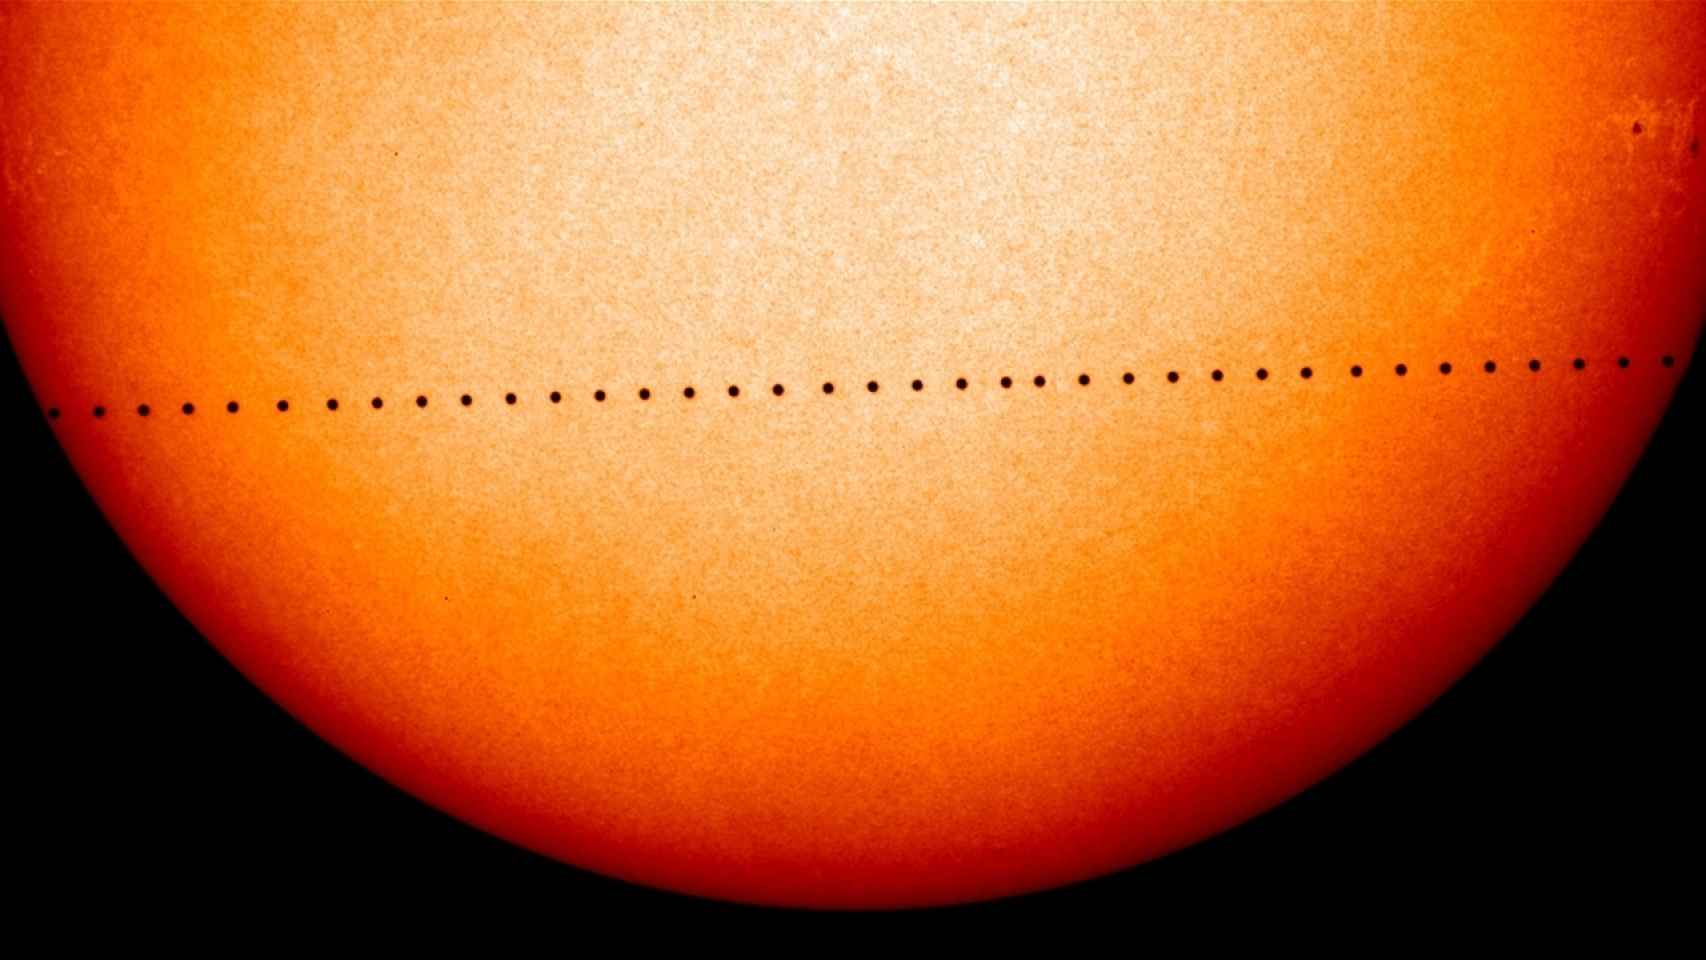 El paseo de Mercurio delante del Sol